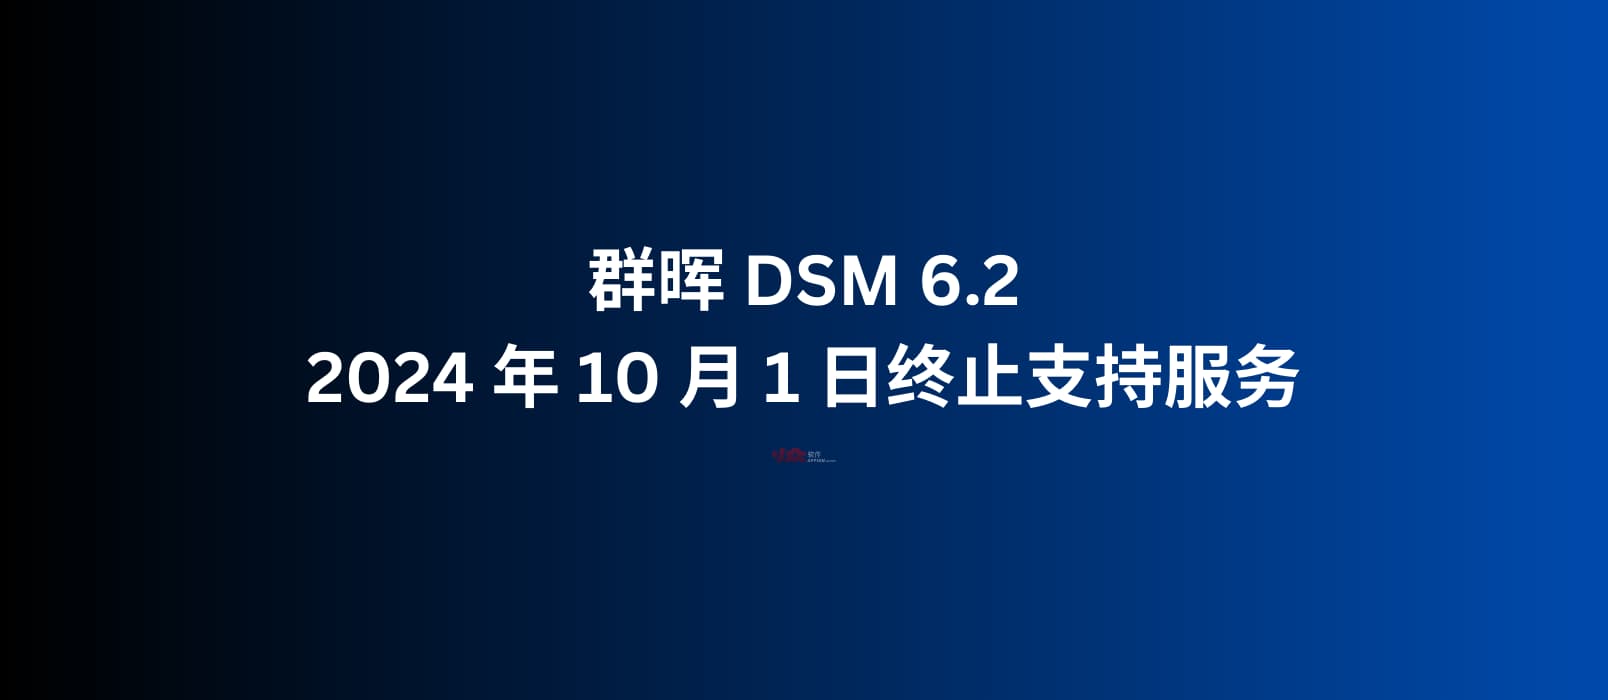 群晖 DSM 6.2 将于 2024 年 10 月 1 日终止支持服务｜10年内购买的机型无需担心此问题